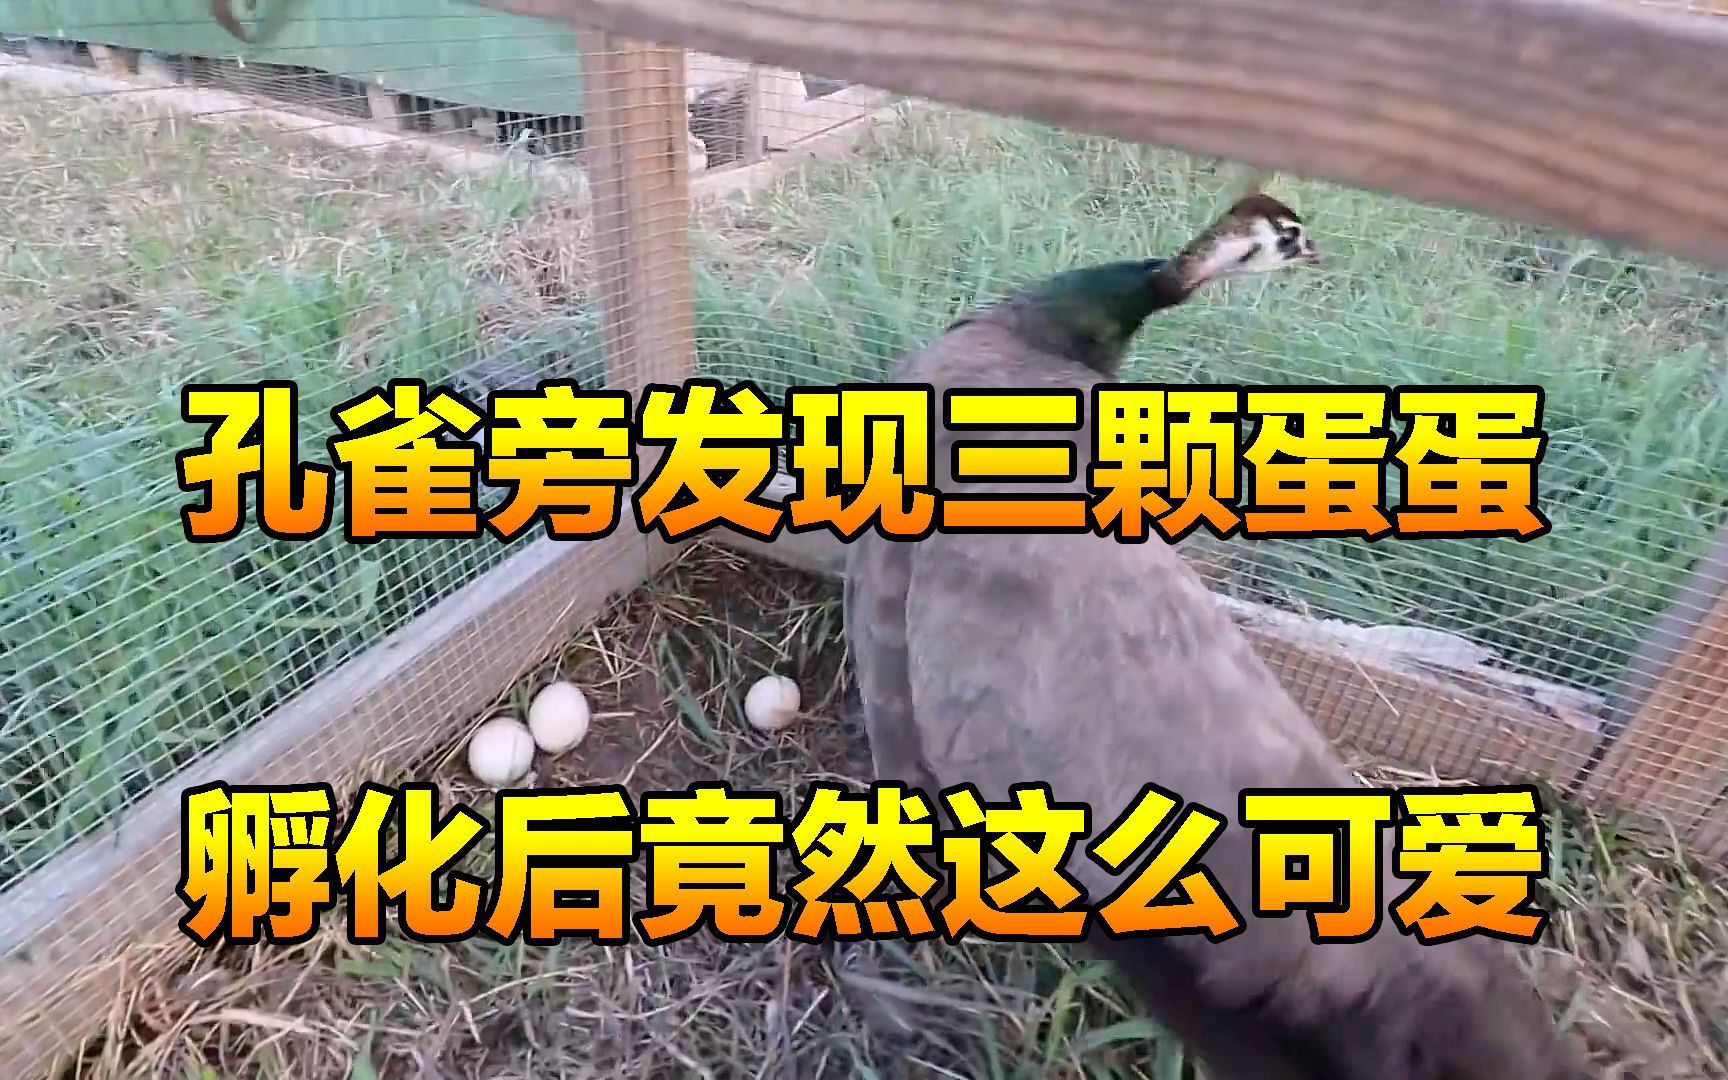 男子发现孔雀旁多出了三颗蛋蛋，没想到他脑洞大开，竟然用鸡孵化